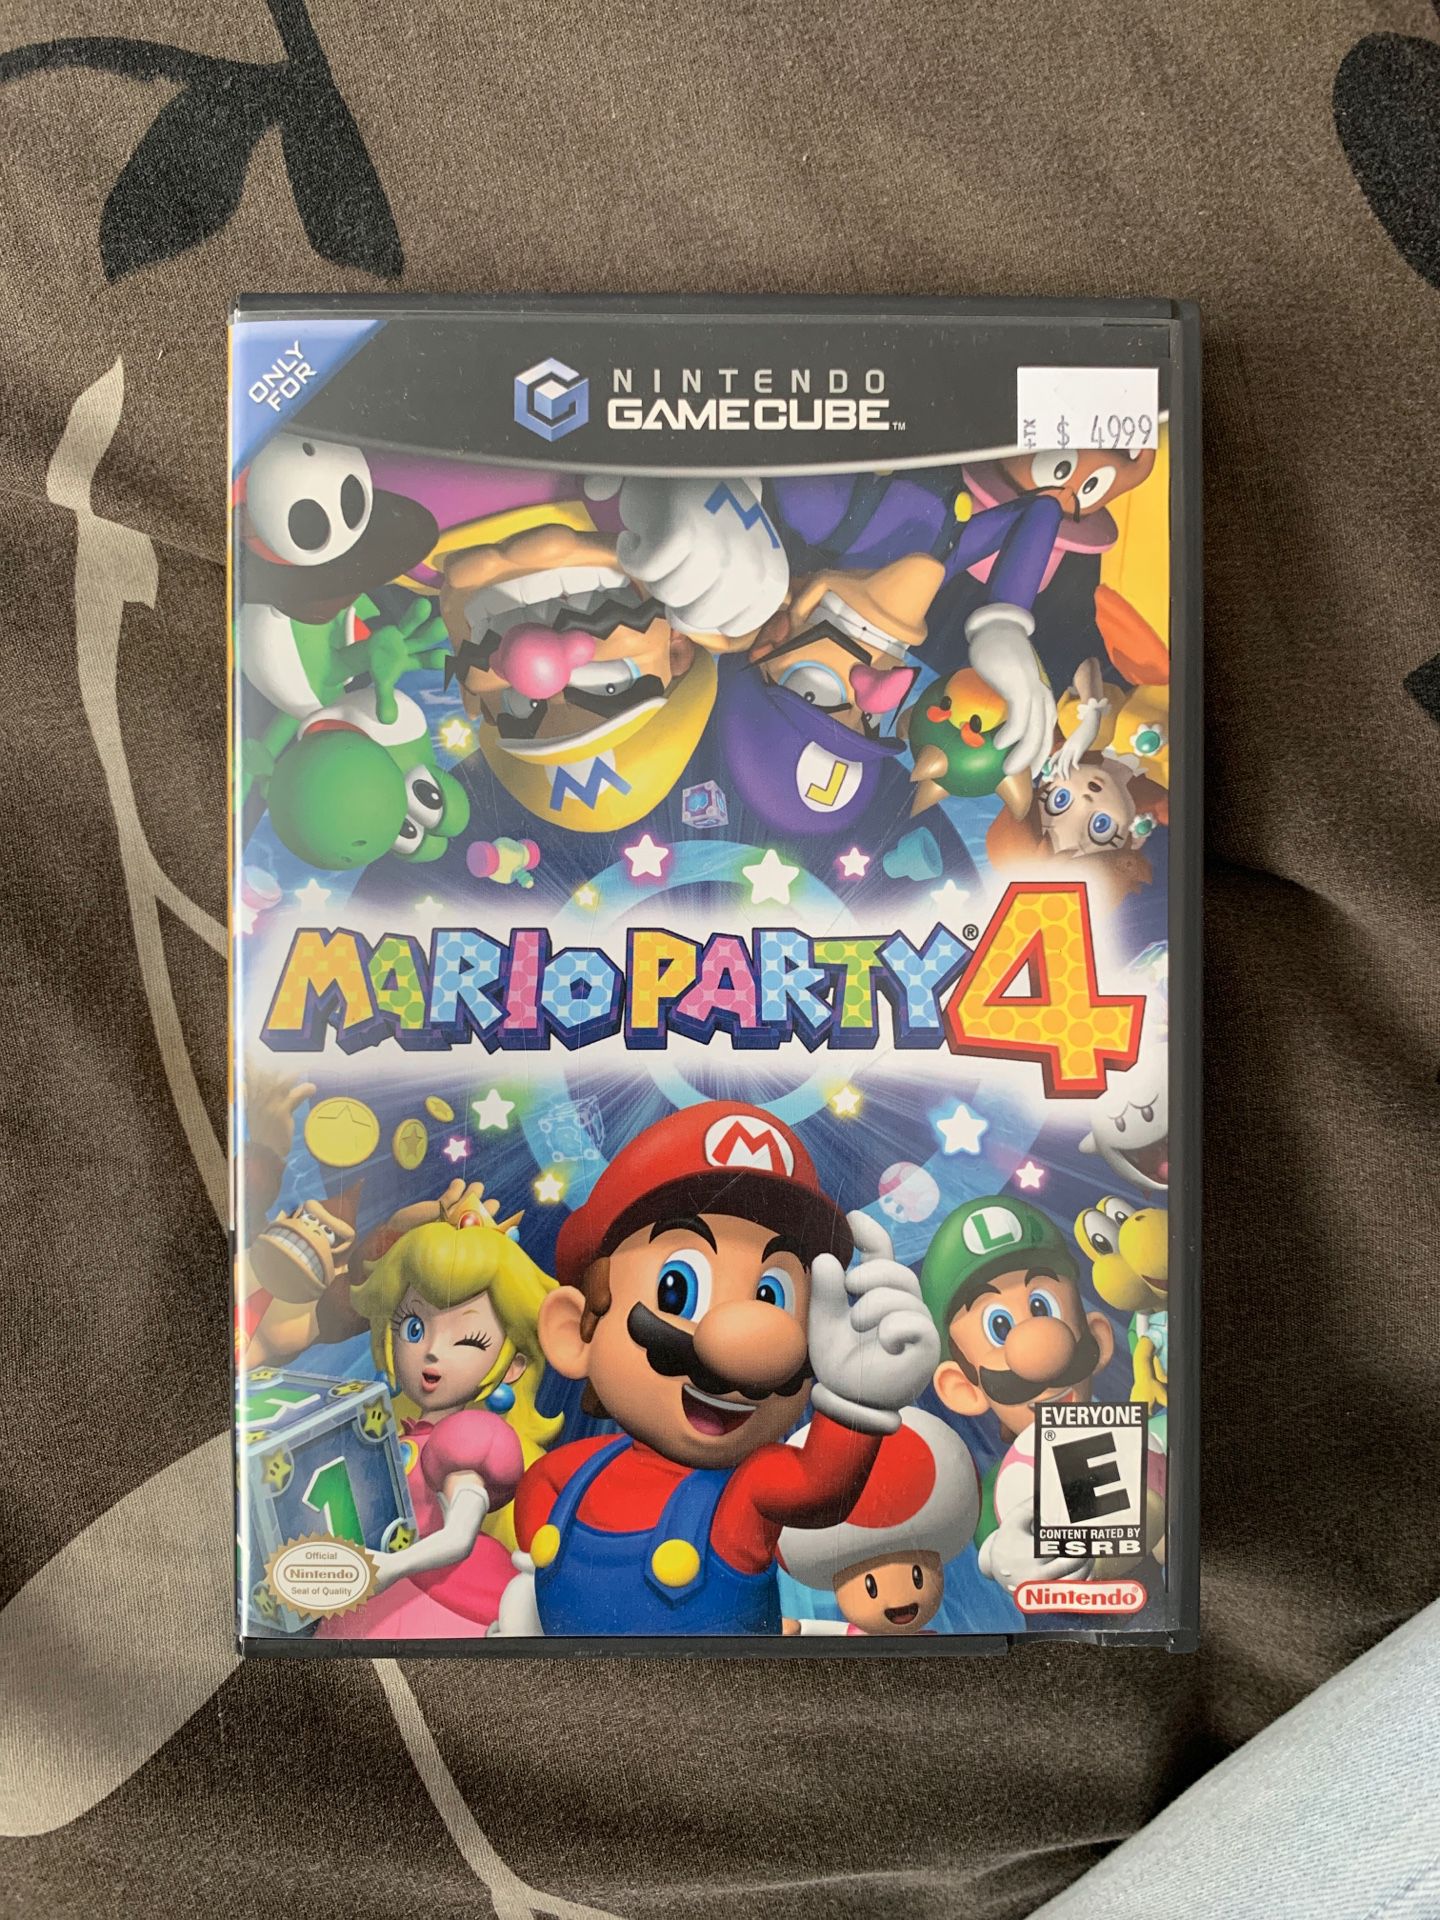 Mario party 4